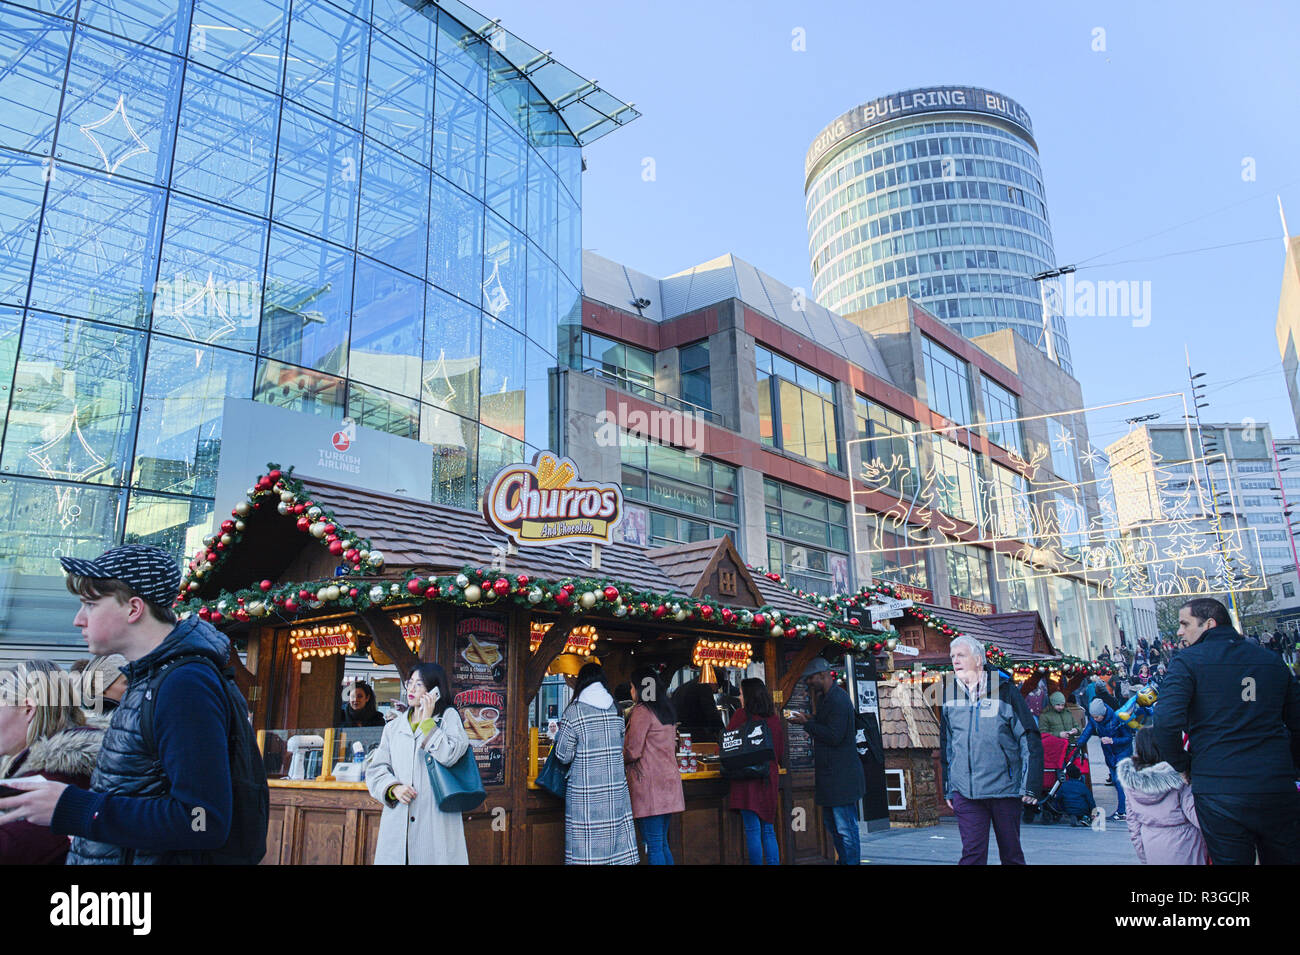 Les bâtiments en verre à Birmingham et marché de Noël. Certaines personnes dans la rue. Banque D'Images